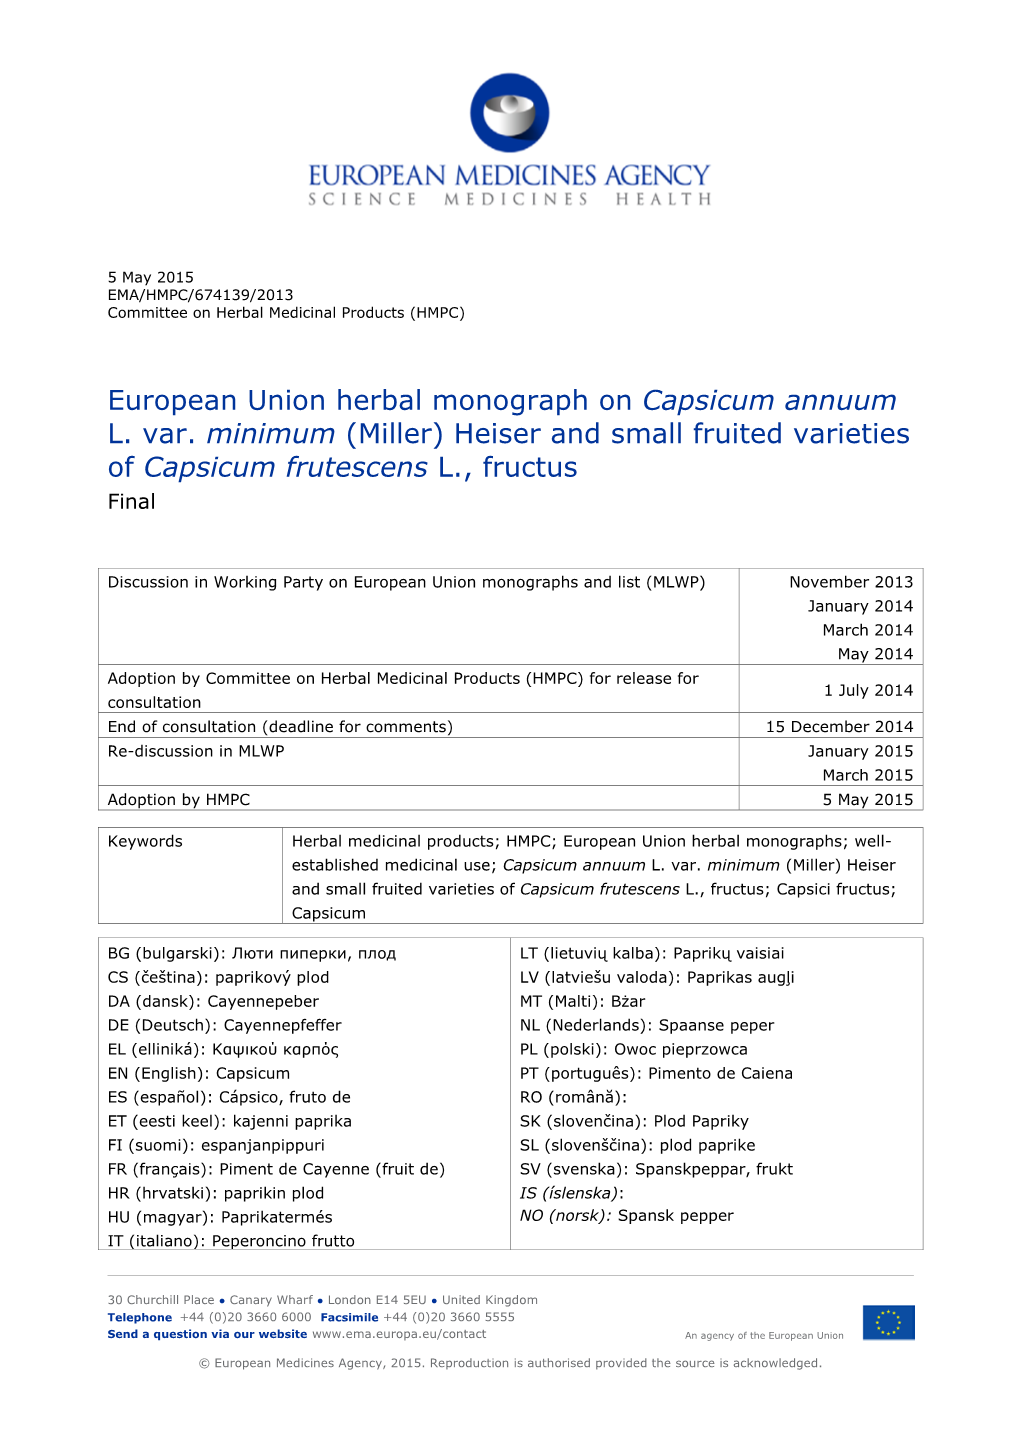 European Union Herbal Monograph on Capsicum Annuum L. Var